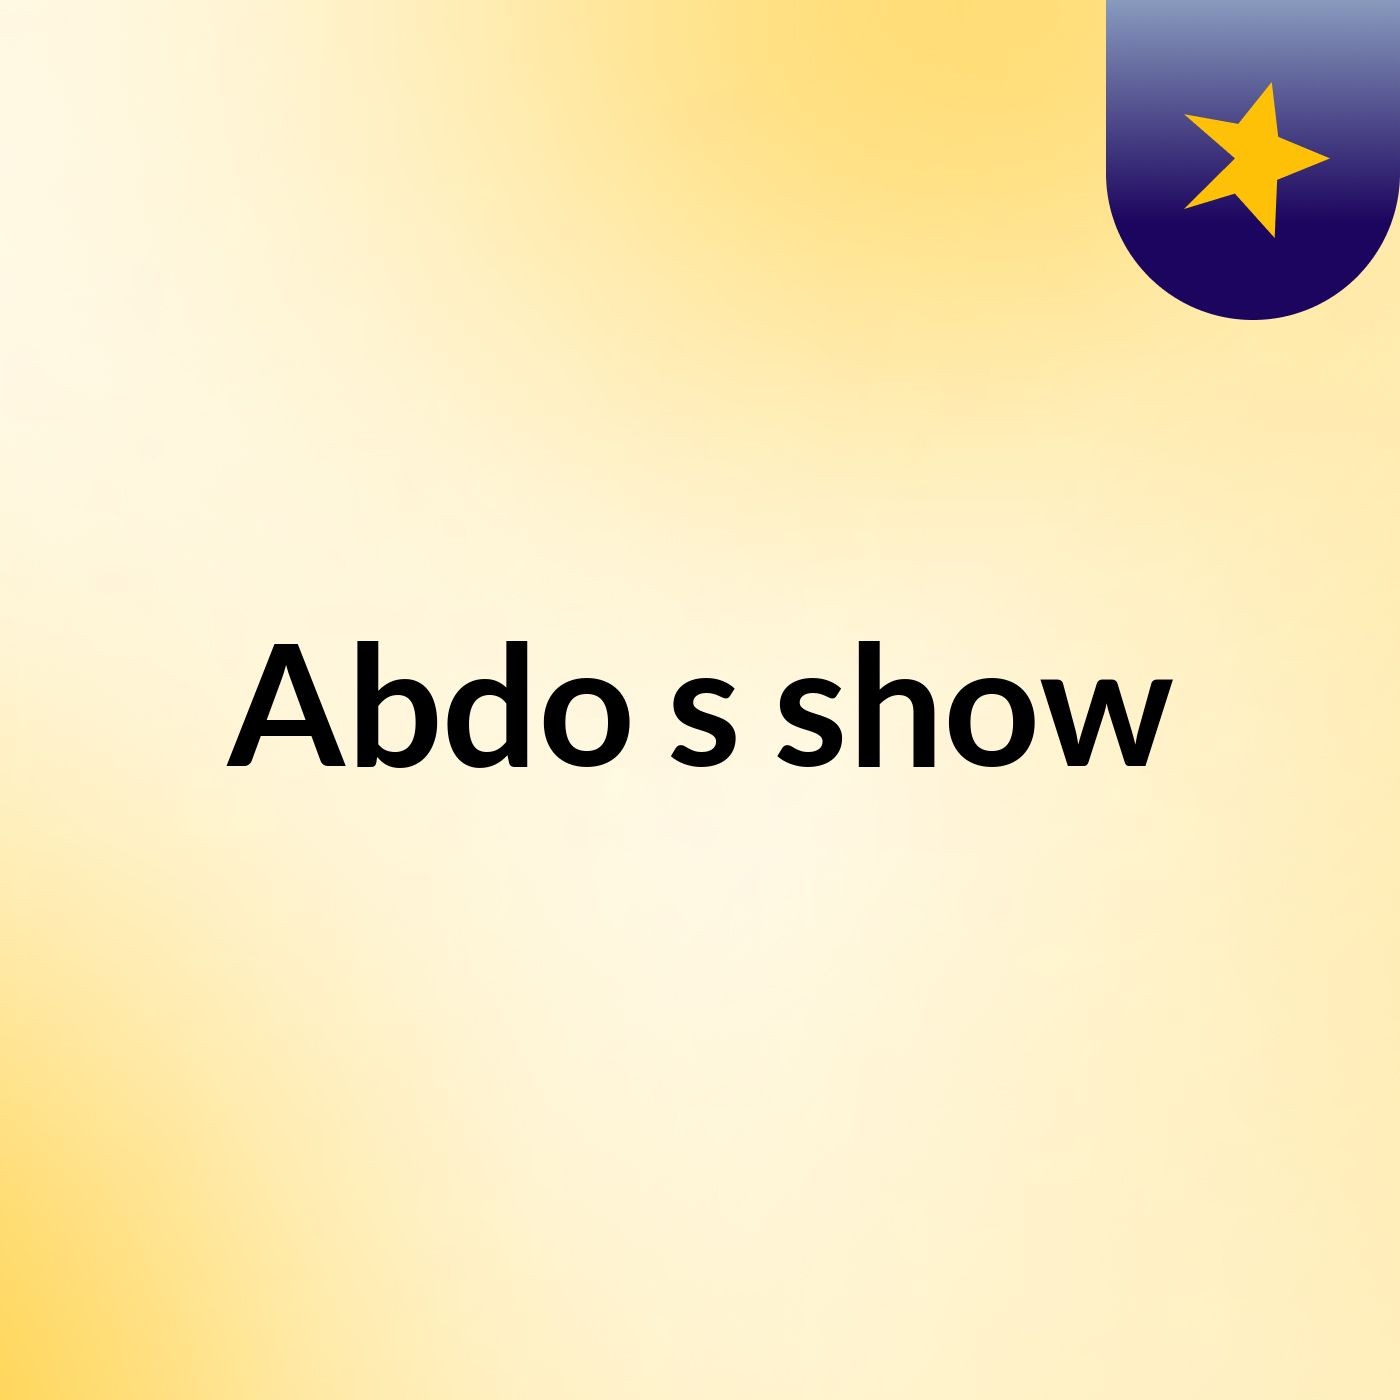 Abdo's show